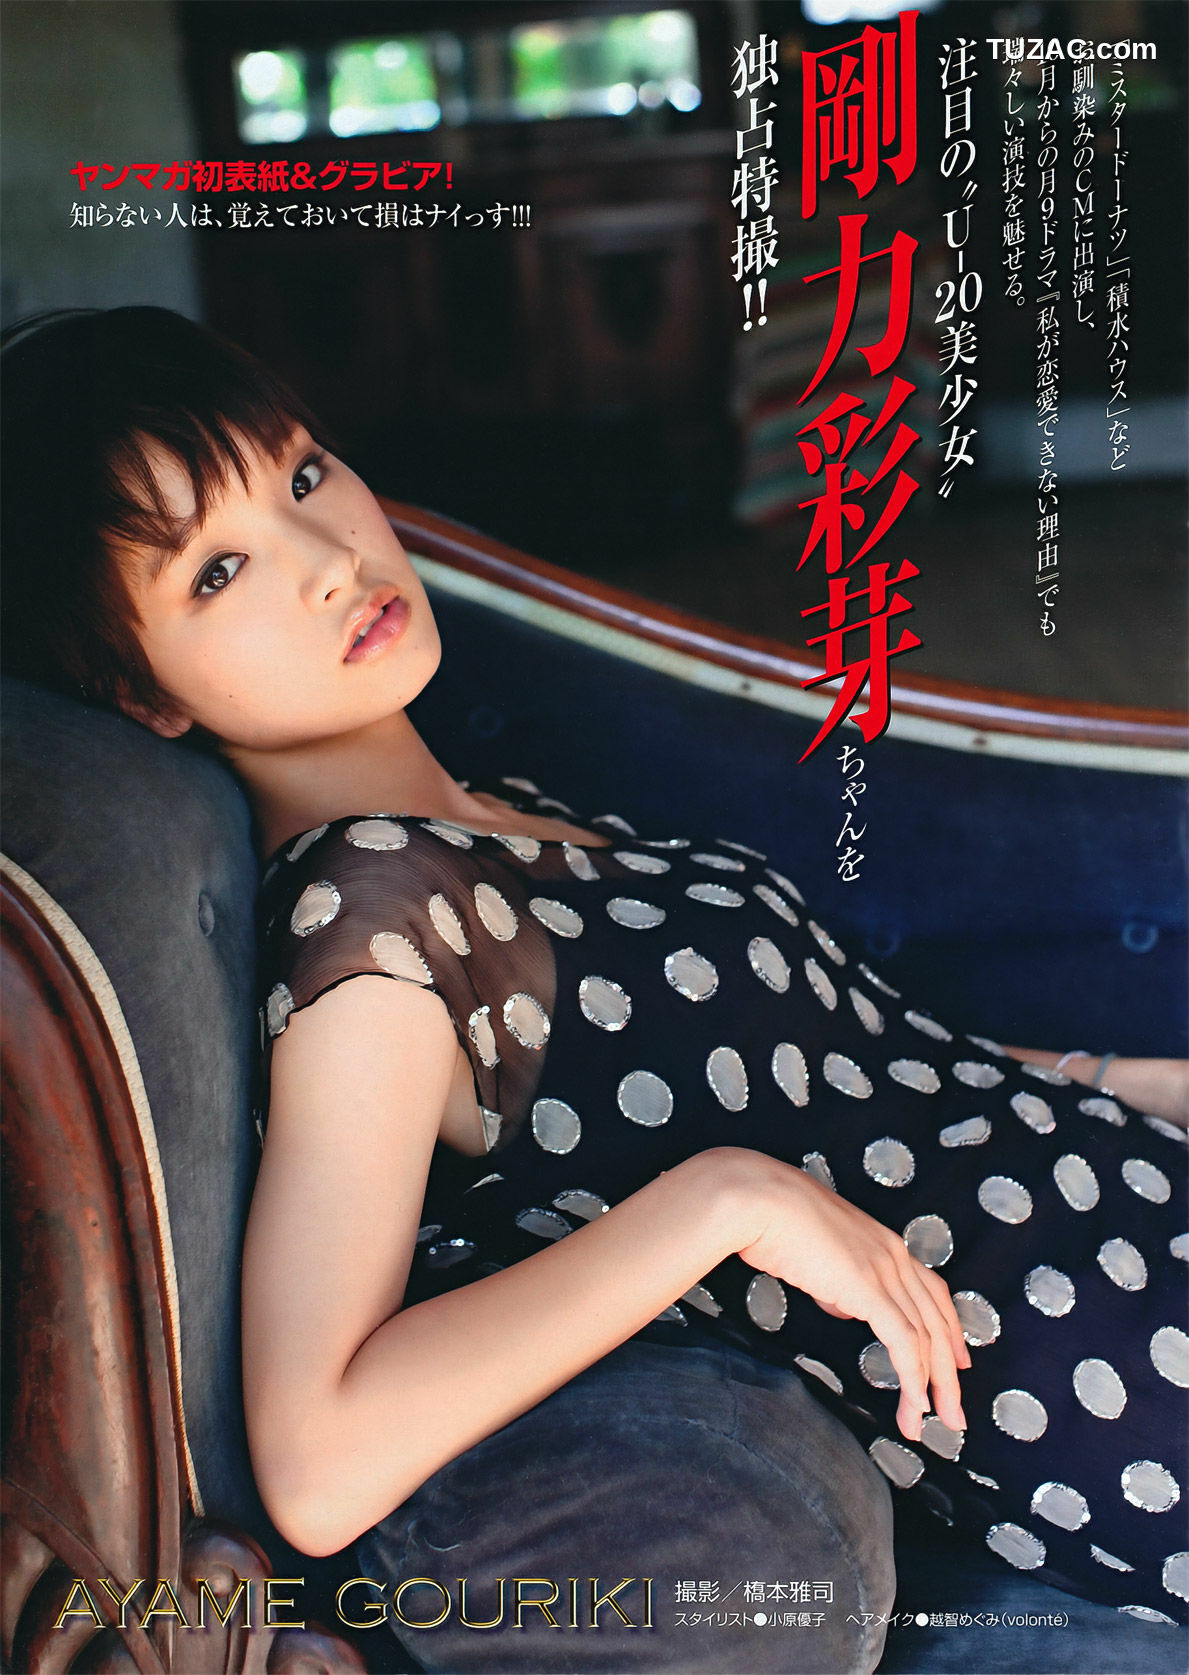 Young Magazine杂志写真_ 剛力彩芽 Ayame Gouriki 2011年No.46 写真杂志[20P]